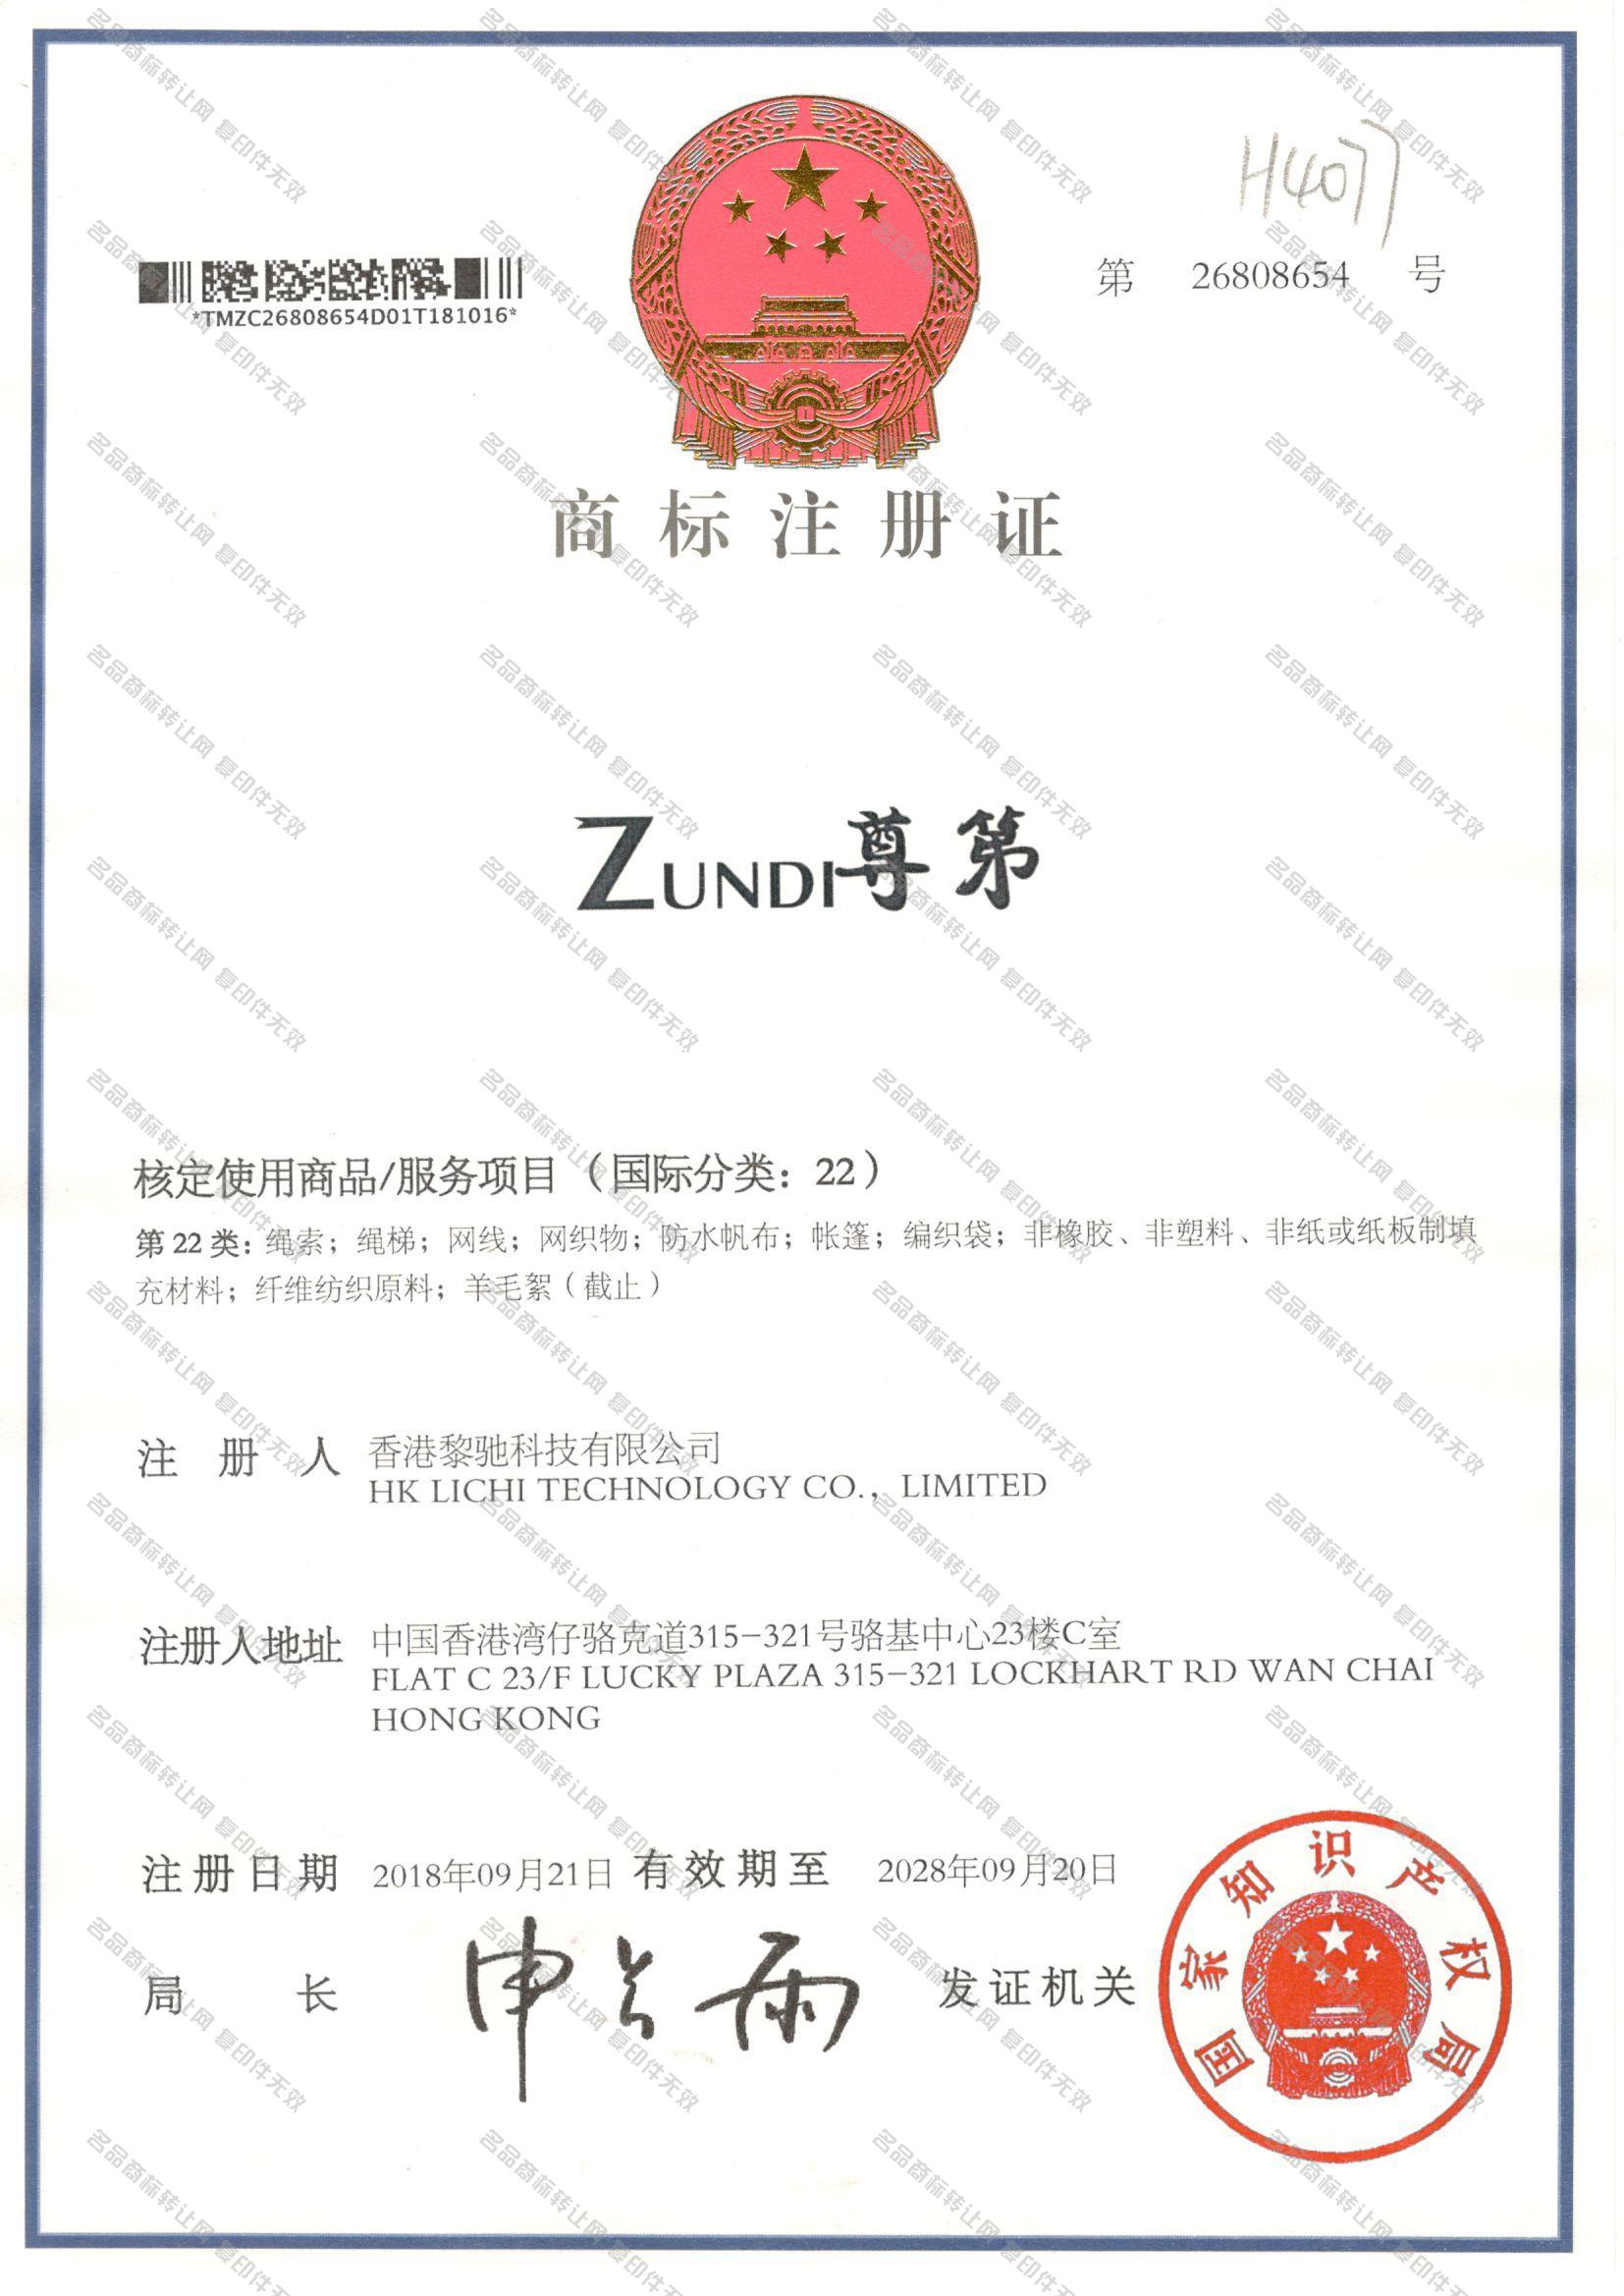 尊第 ZUNDI注册证